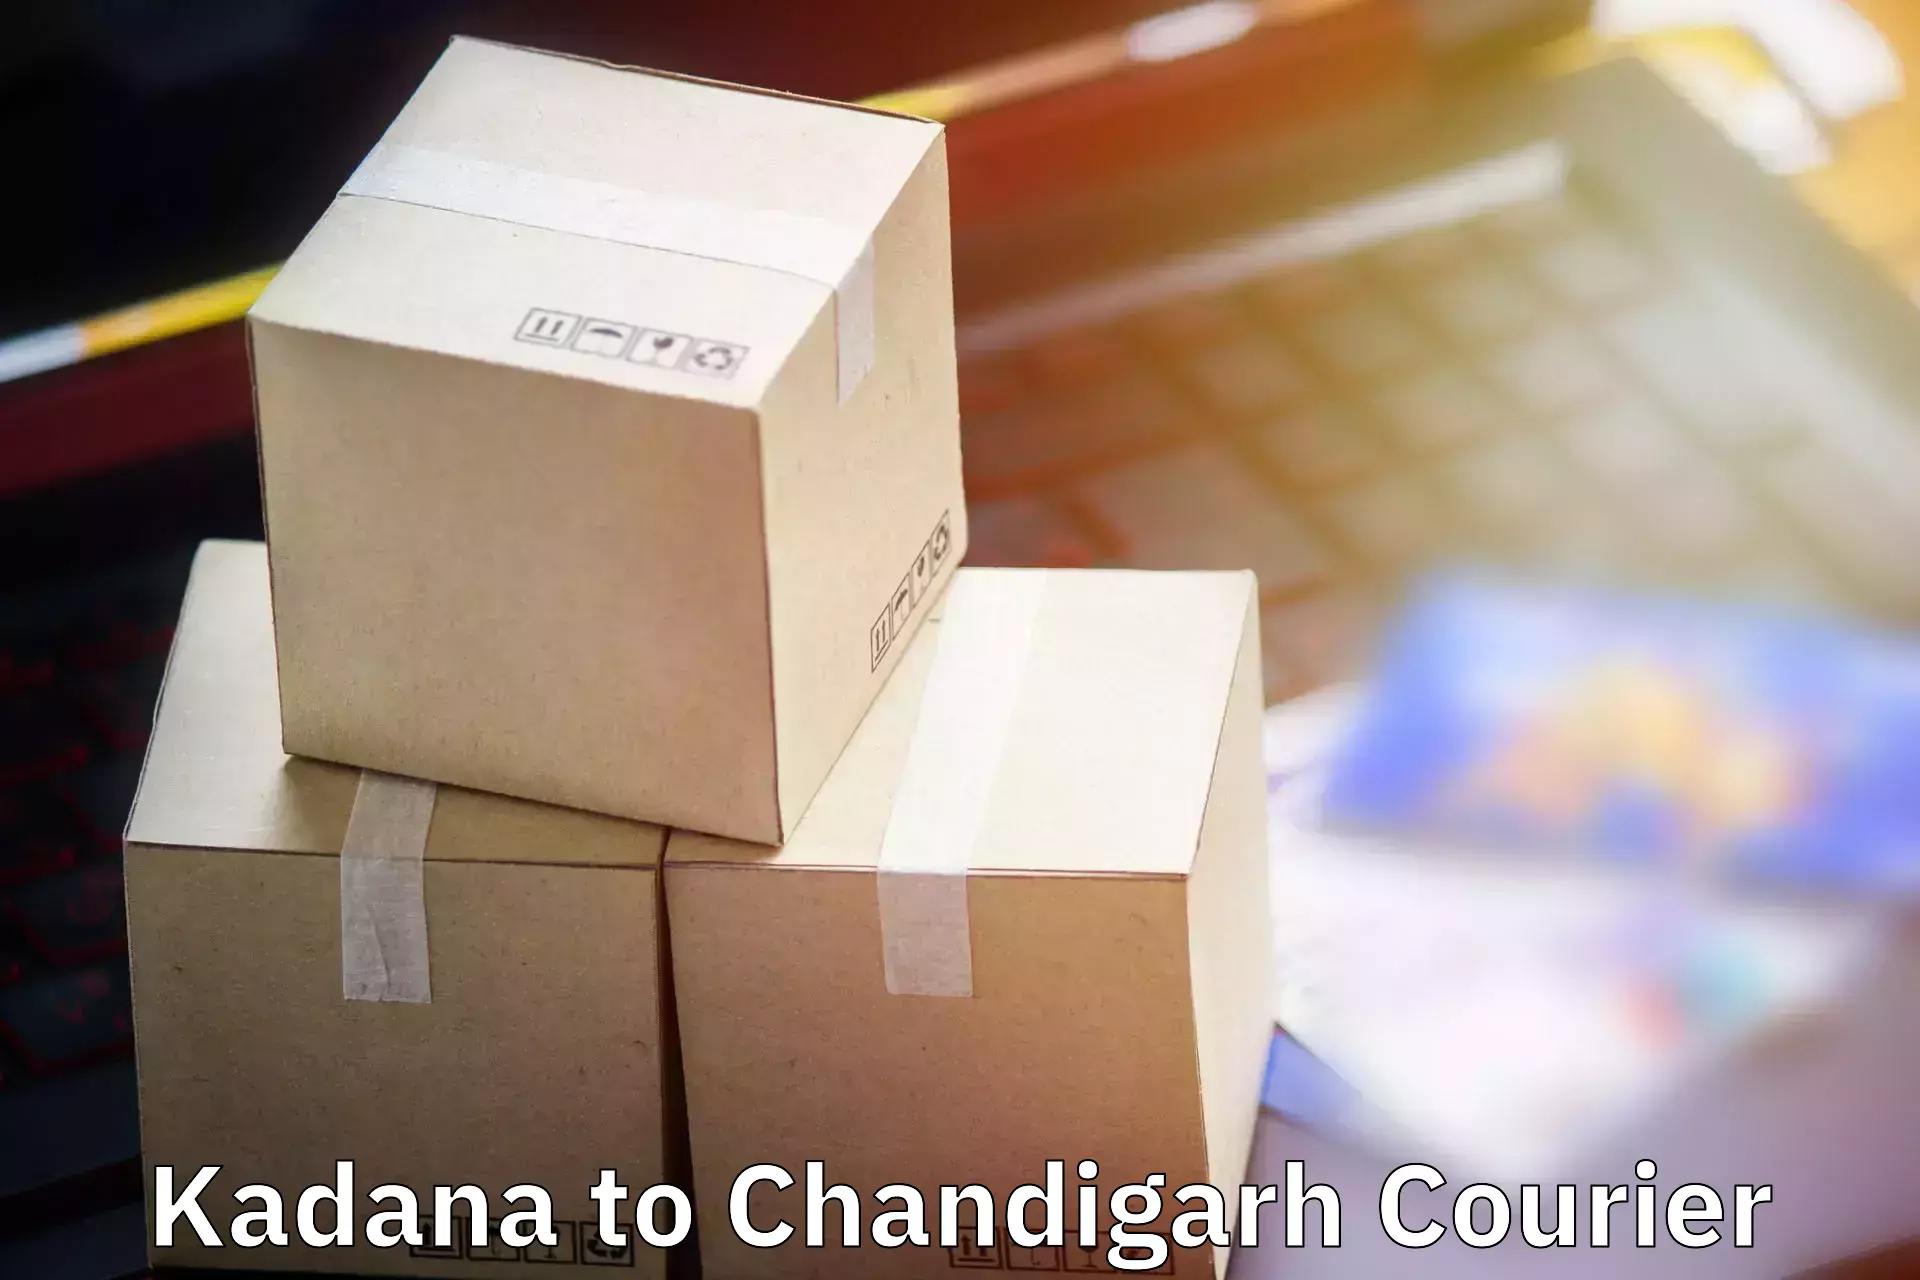 Personal effects shipping Kadana to Chandigarh